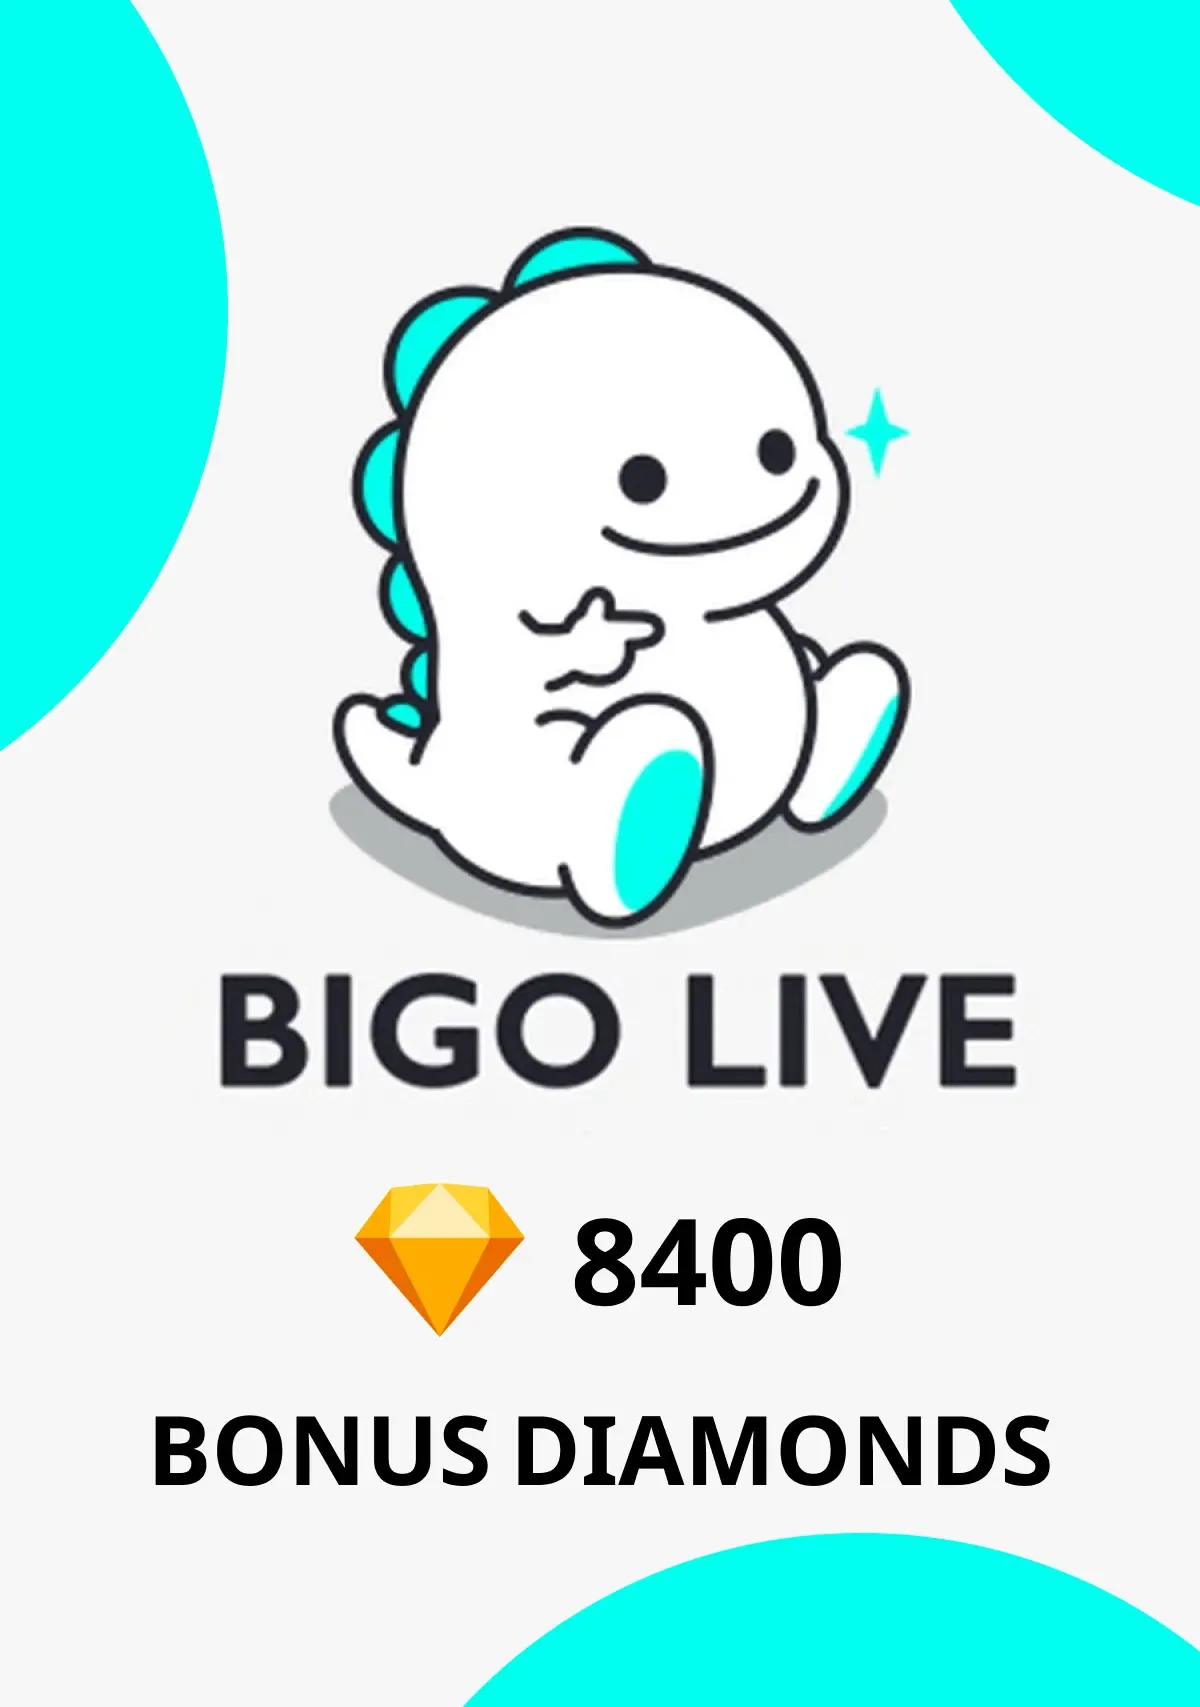 Comprar tarjeta regalo: Bigo Live Bonus Diamonds Digital Code XBOX